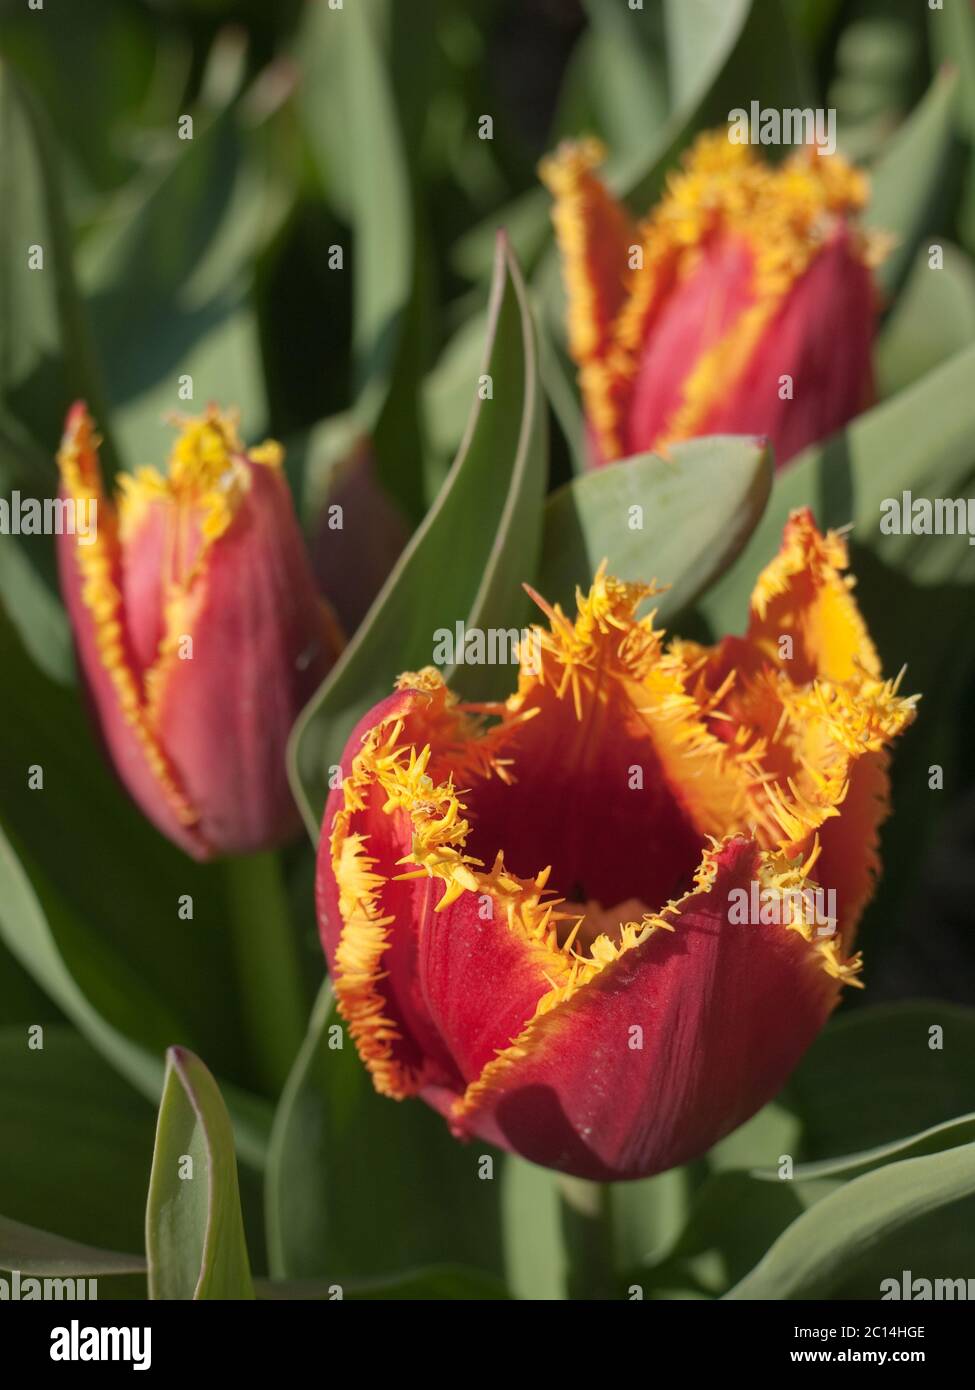 Tulipes rouges avec un bord supérieur dentelé jaune le long des pétales. Arrière-plan vert flou avec des feuilles Banque D'Images